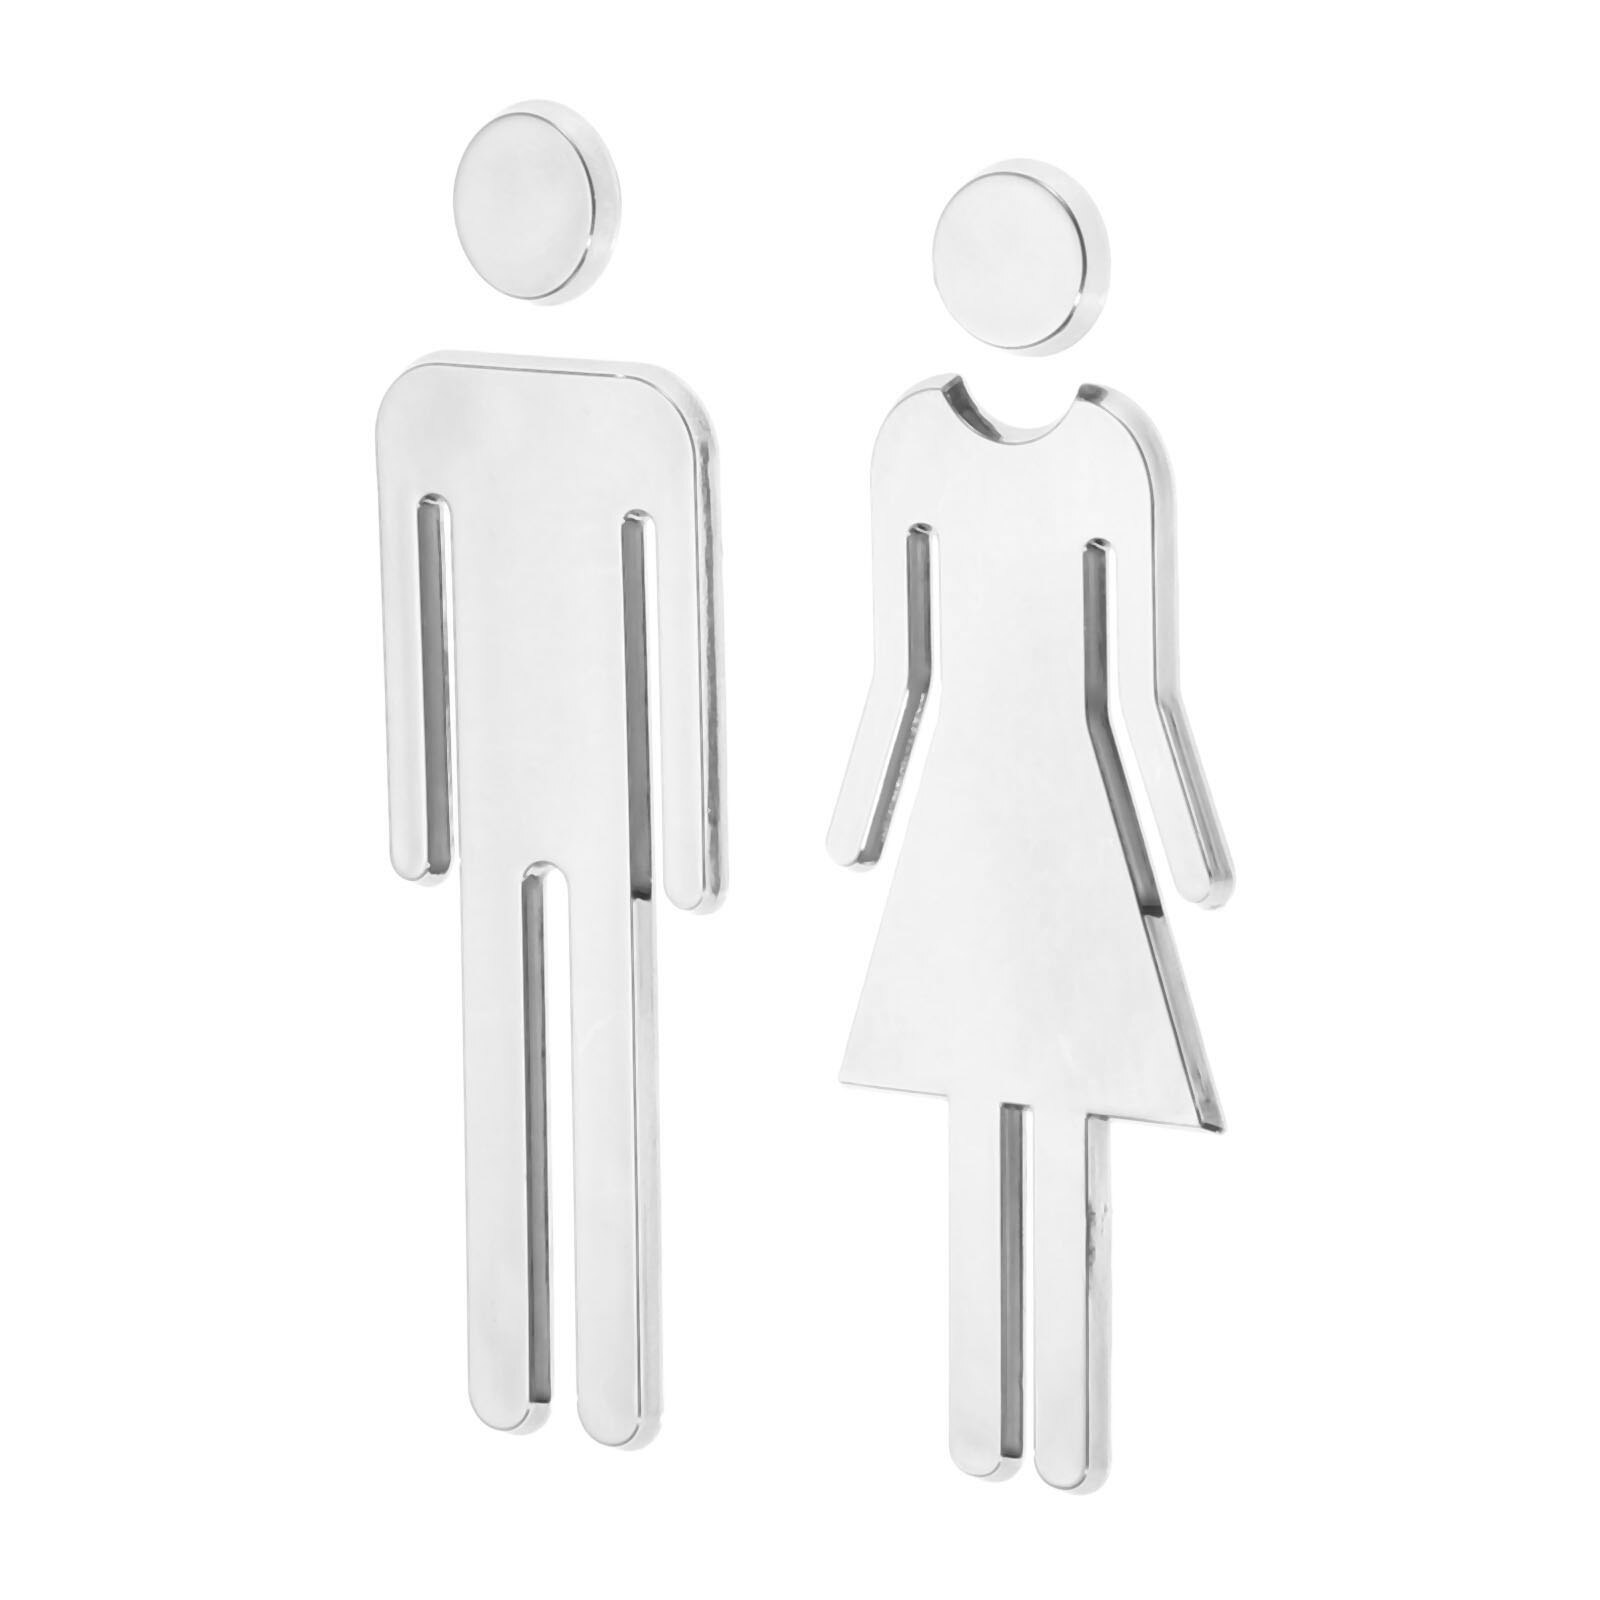 2 stuks/1 Paar Verwijderbare 3D Spiegel Openbare Wc Symbool Toilet Teken Mannen Vrouwen Wall Art Stickers voor Hotel bar School Zilver 12 cm